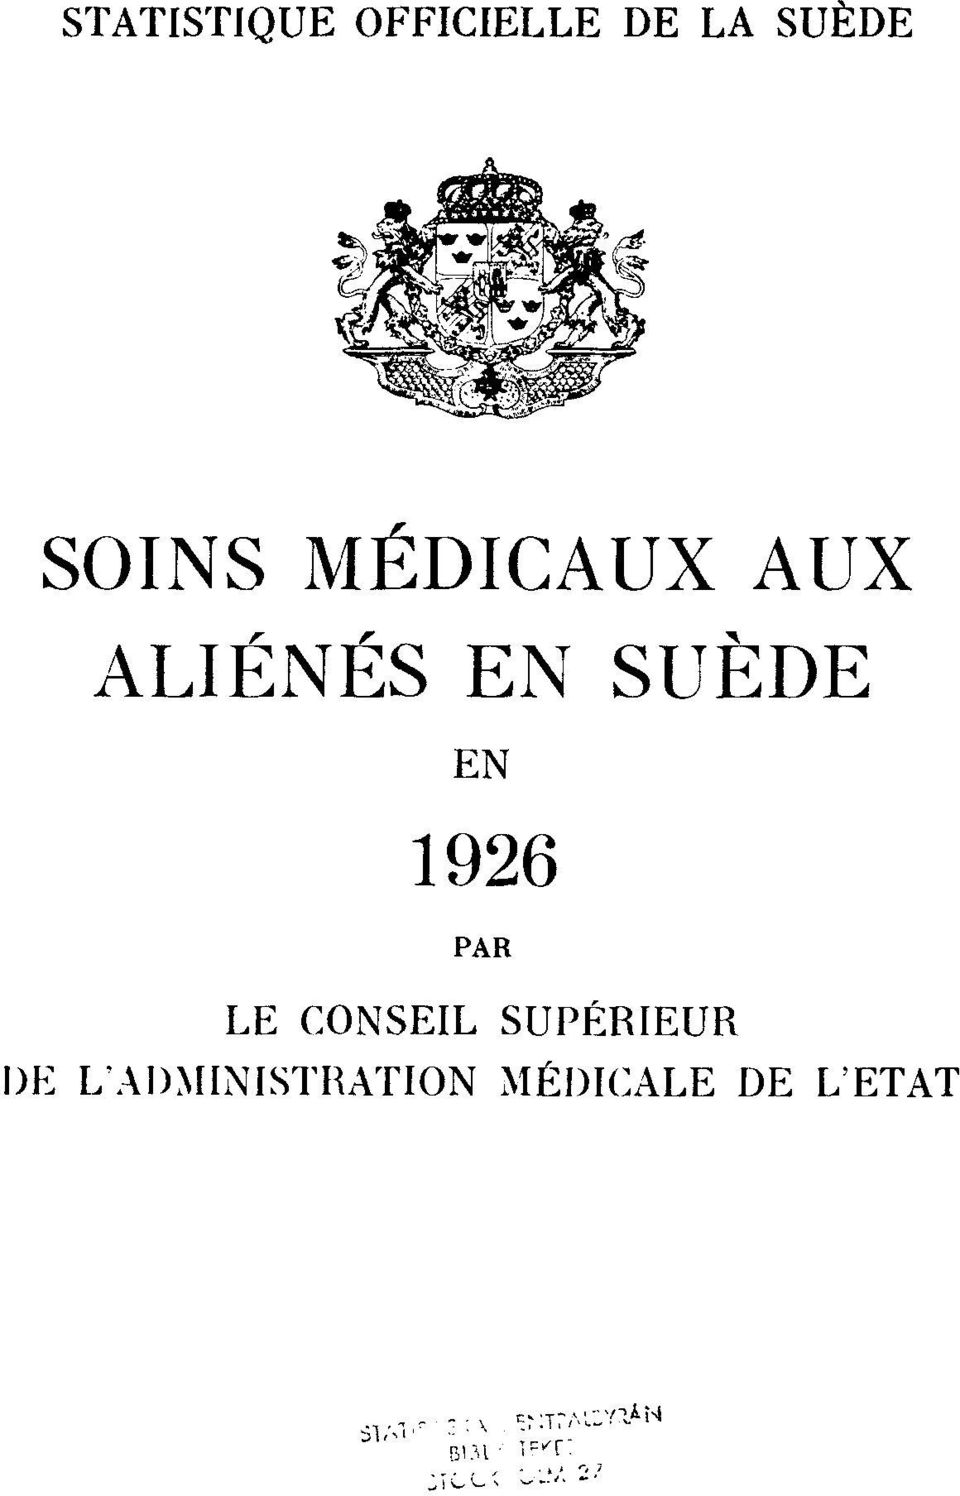 EN 1926 PAR LE CONSEIL SUPÉRIEUR DE